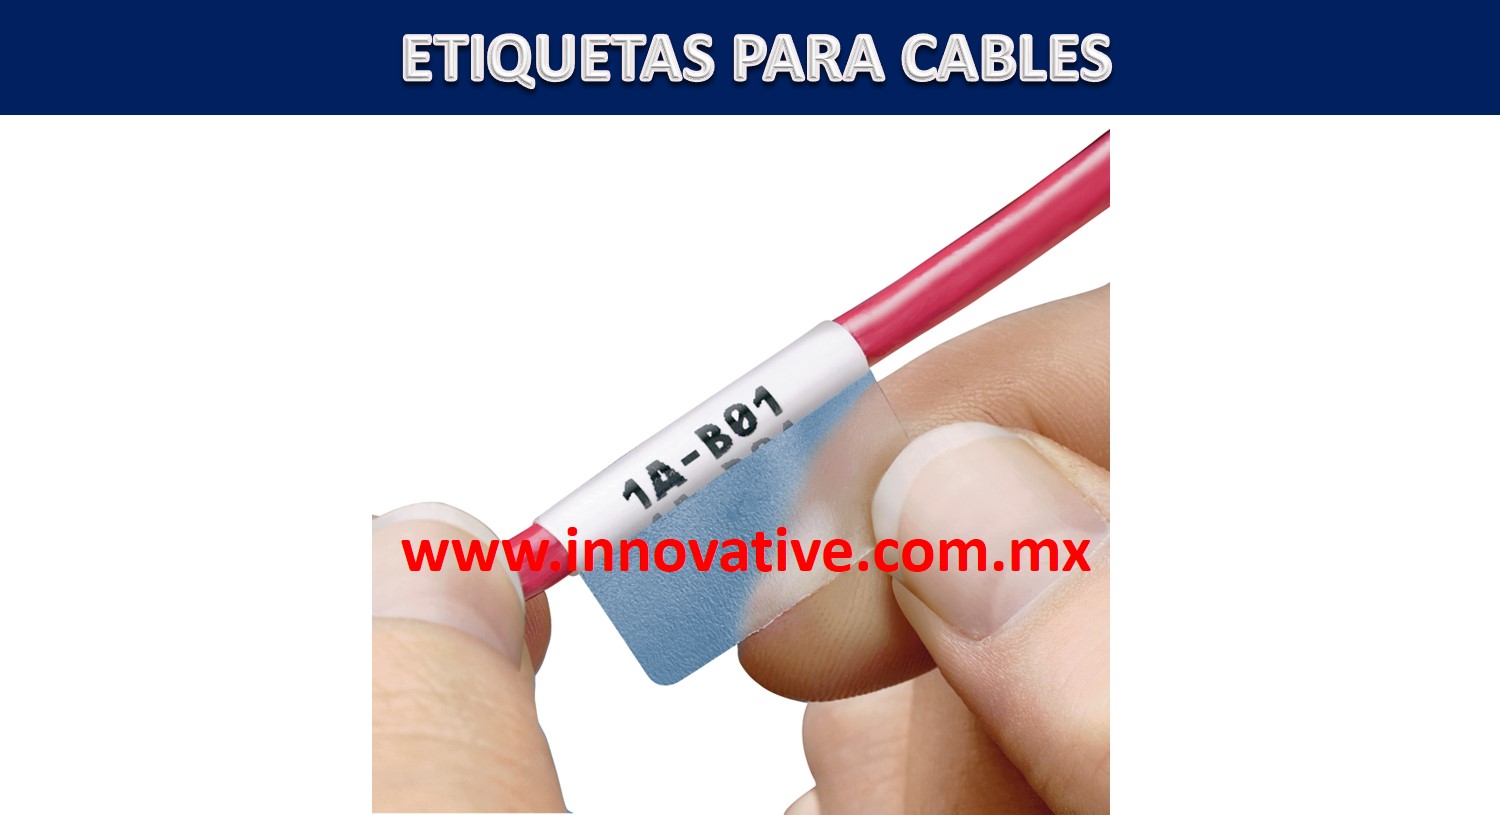 http://www.innovative.com.mx/wp-content/uploads/2017/11/ETIQUETADORA-PARA-CABLES.jpg